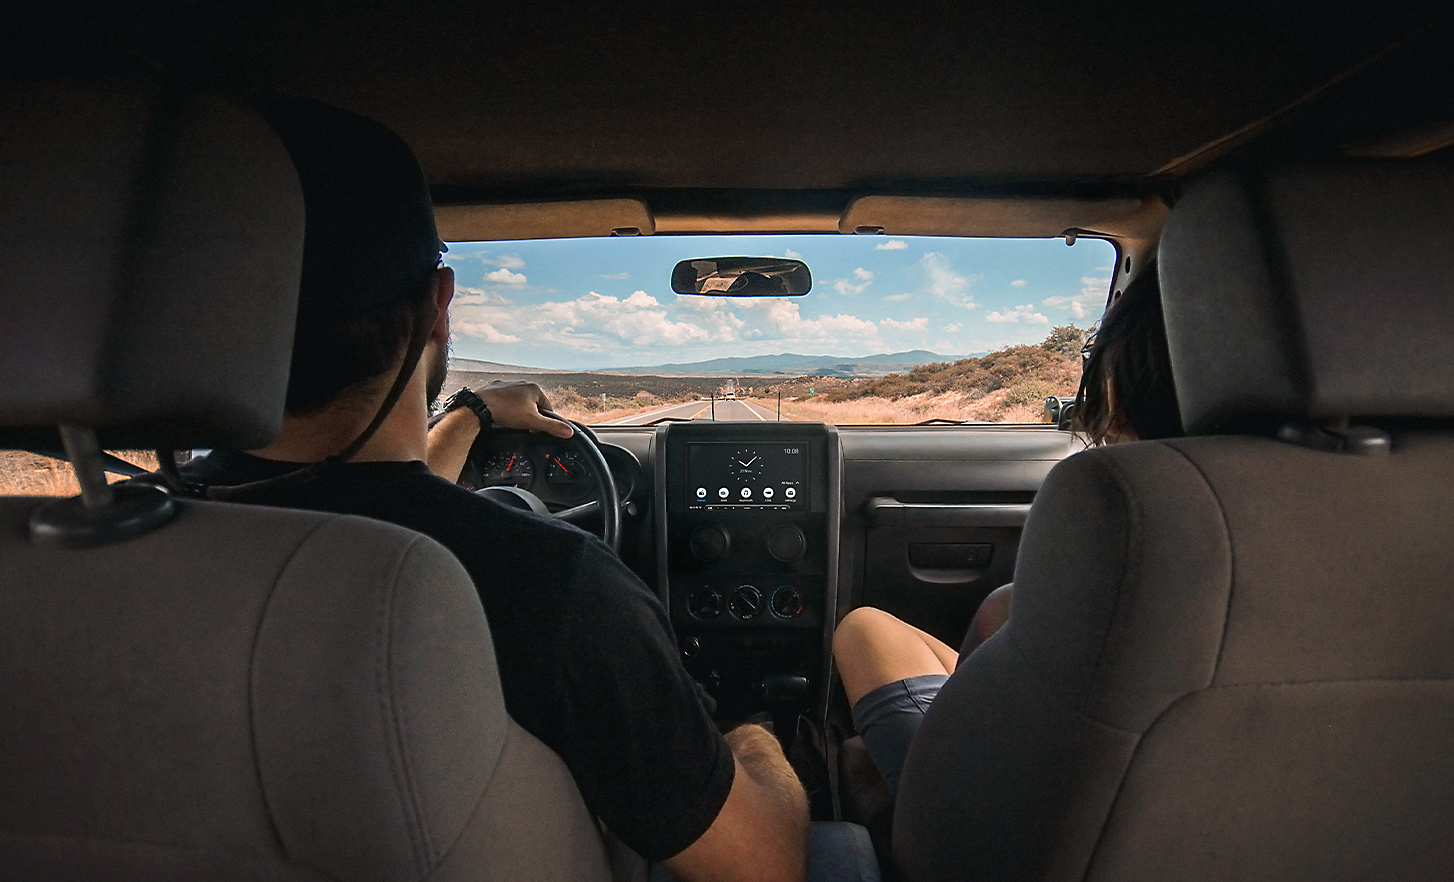 Kuva kahdesta ihmisestä ajamassa autiomaata muistuttavassa ympäristössä, XAV-AX6050 kojelaudassa